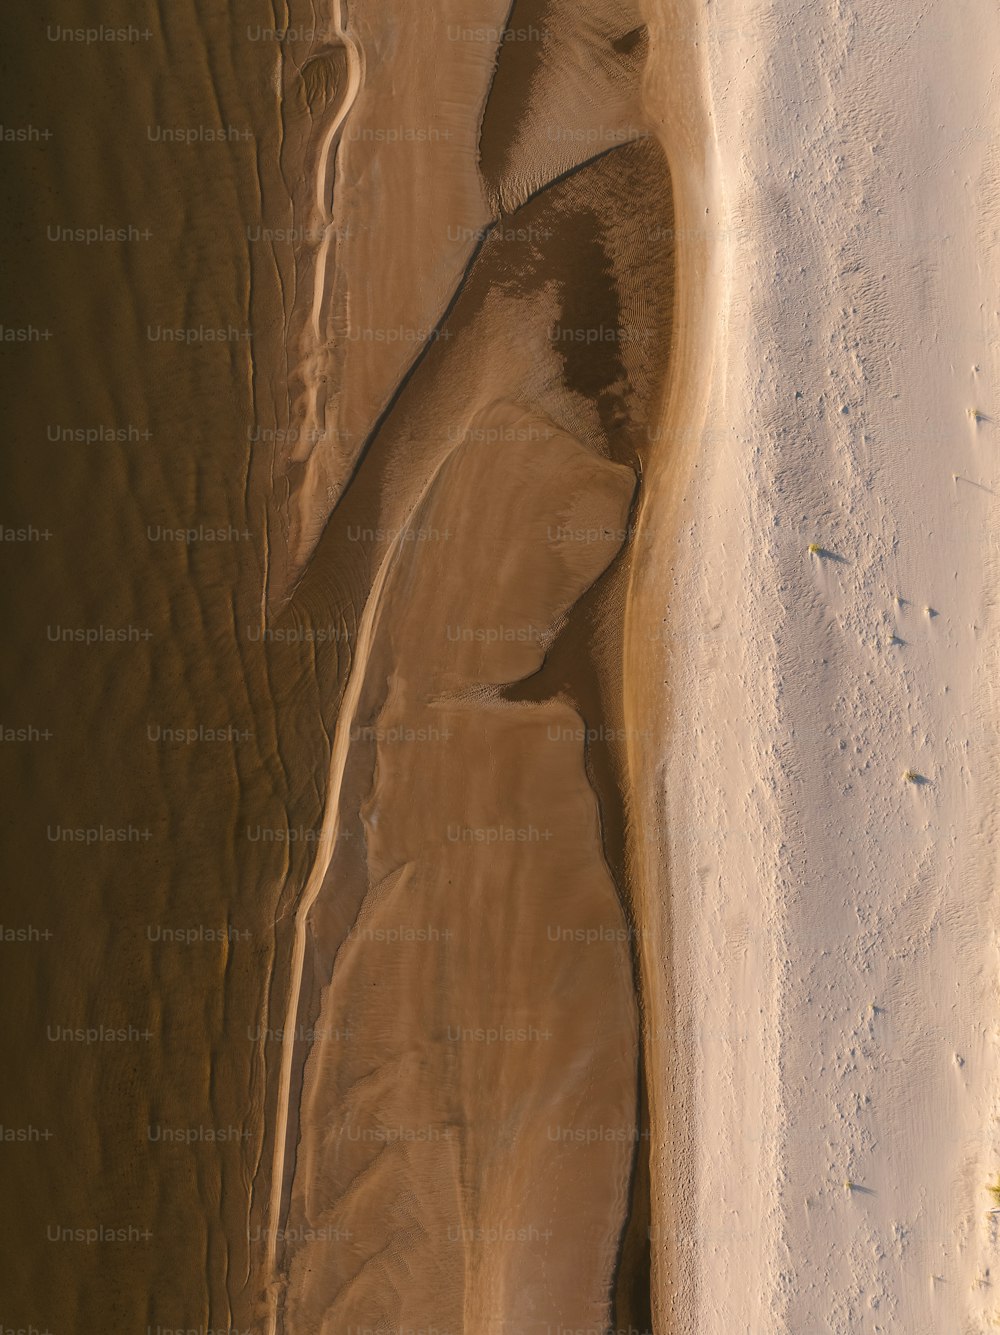 eine Luftaufnahme eines Sandstrandes und eines Gewässers